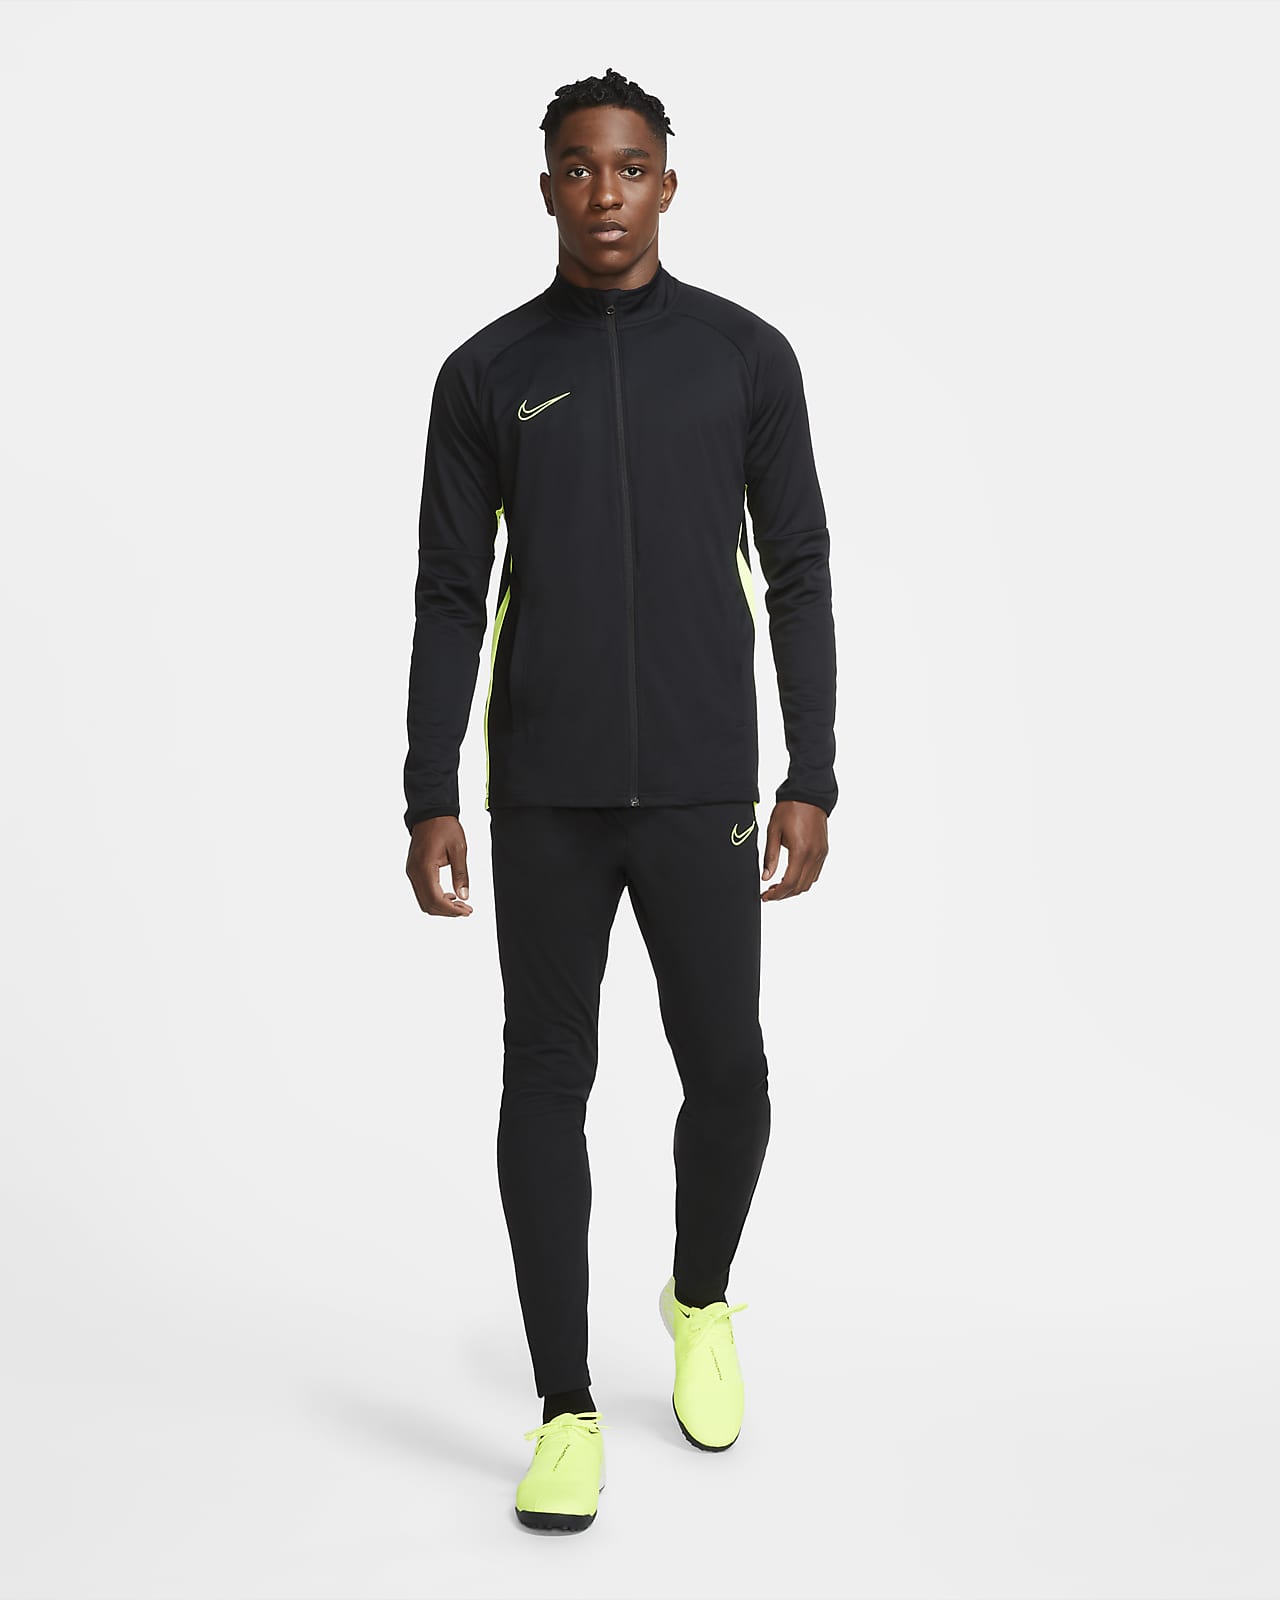 Survetement Homme Nike Dri-Fit Noir et Bleu - Football - Manches